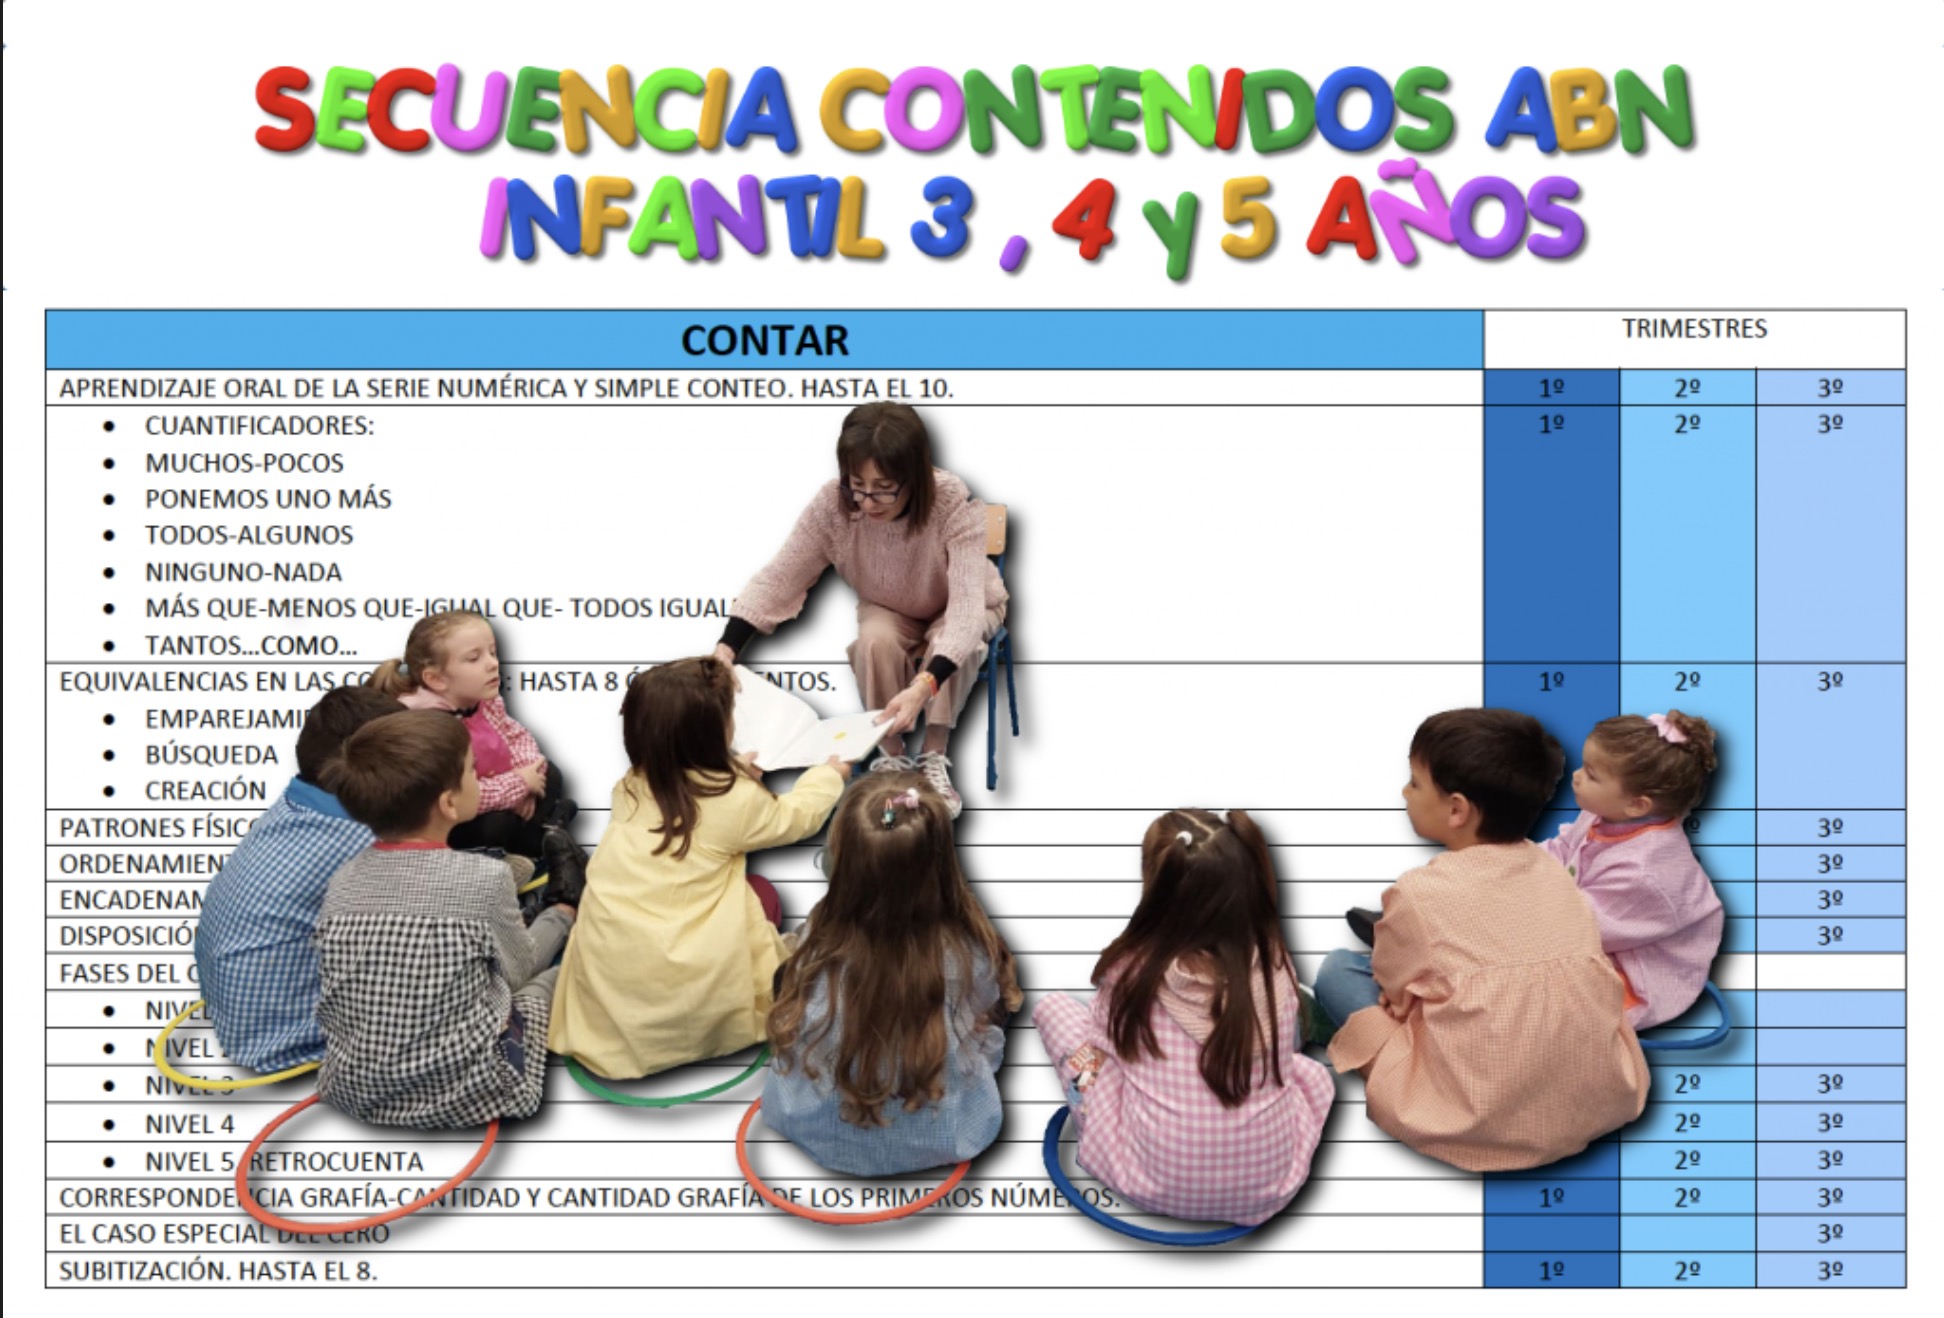 SECUENCIA-CONTENIDOS-ABN-INFANTIL-3-4-y-5-ANOS